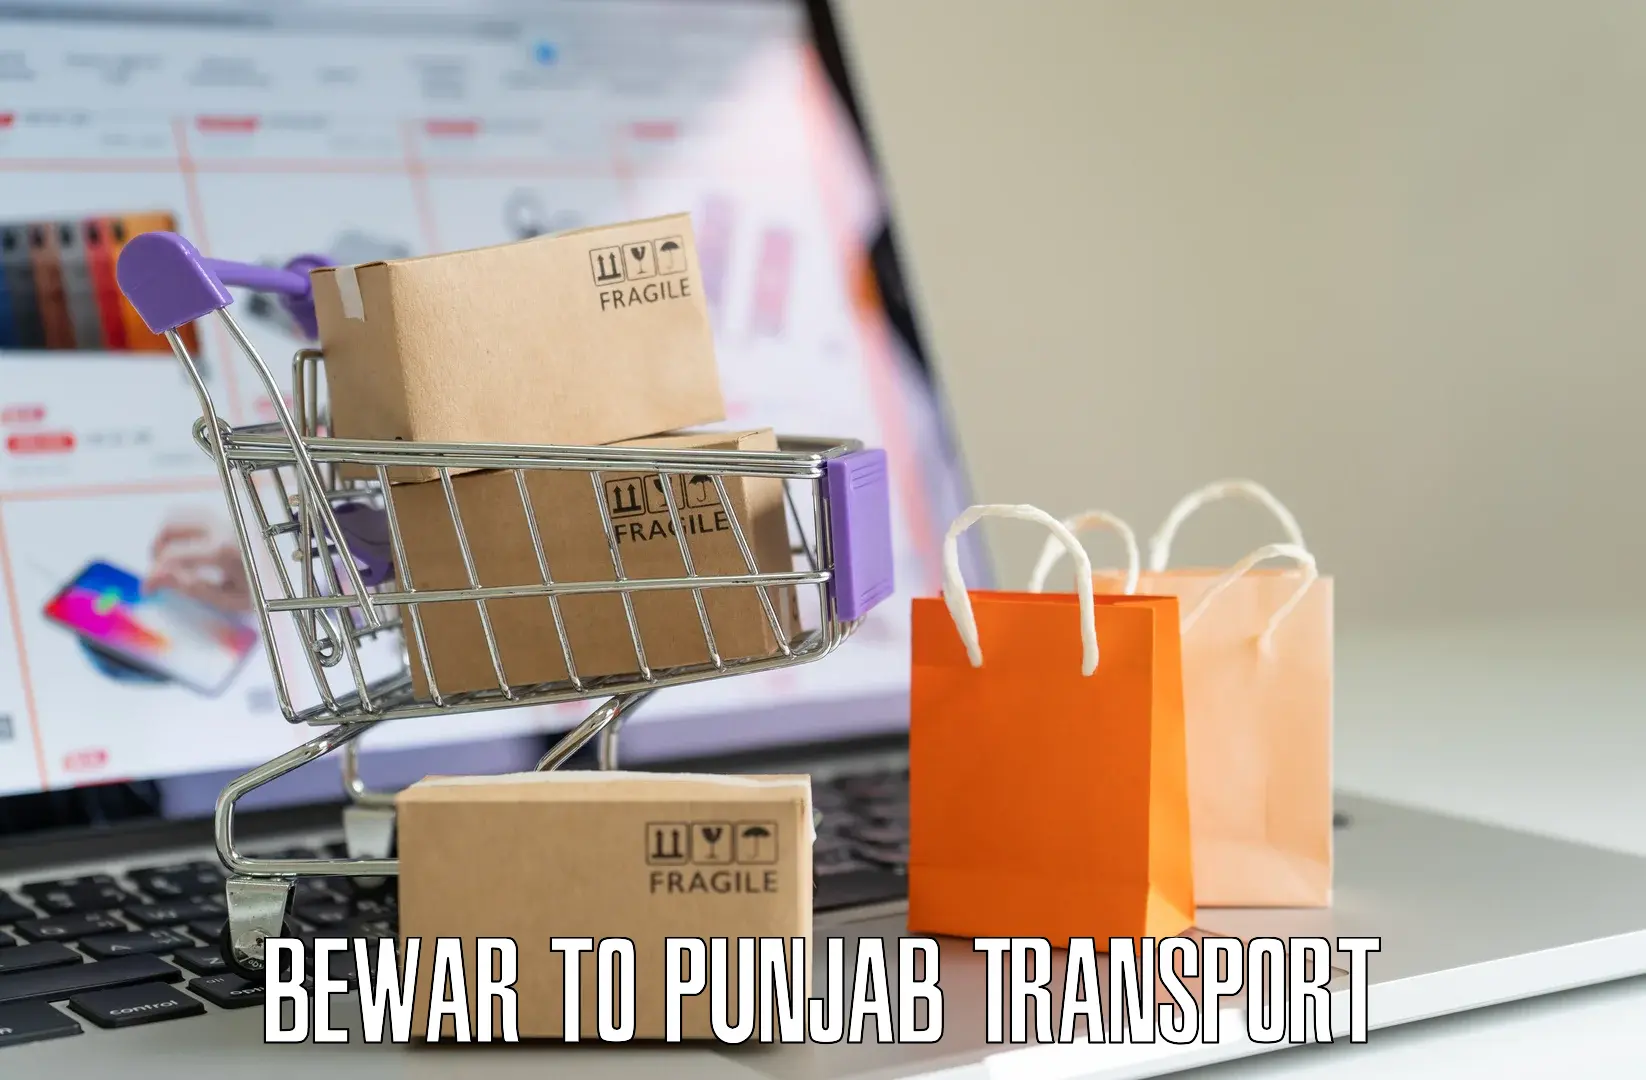 Two wheeler parcel service Bewar to Punjab